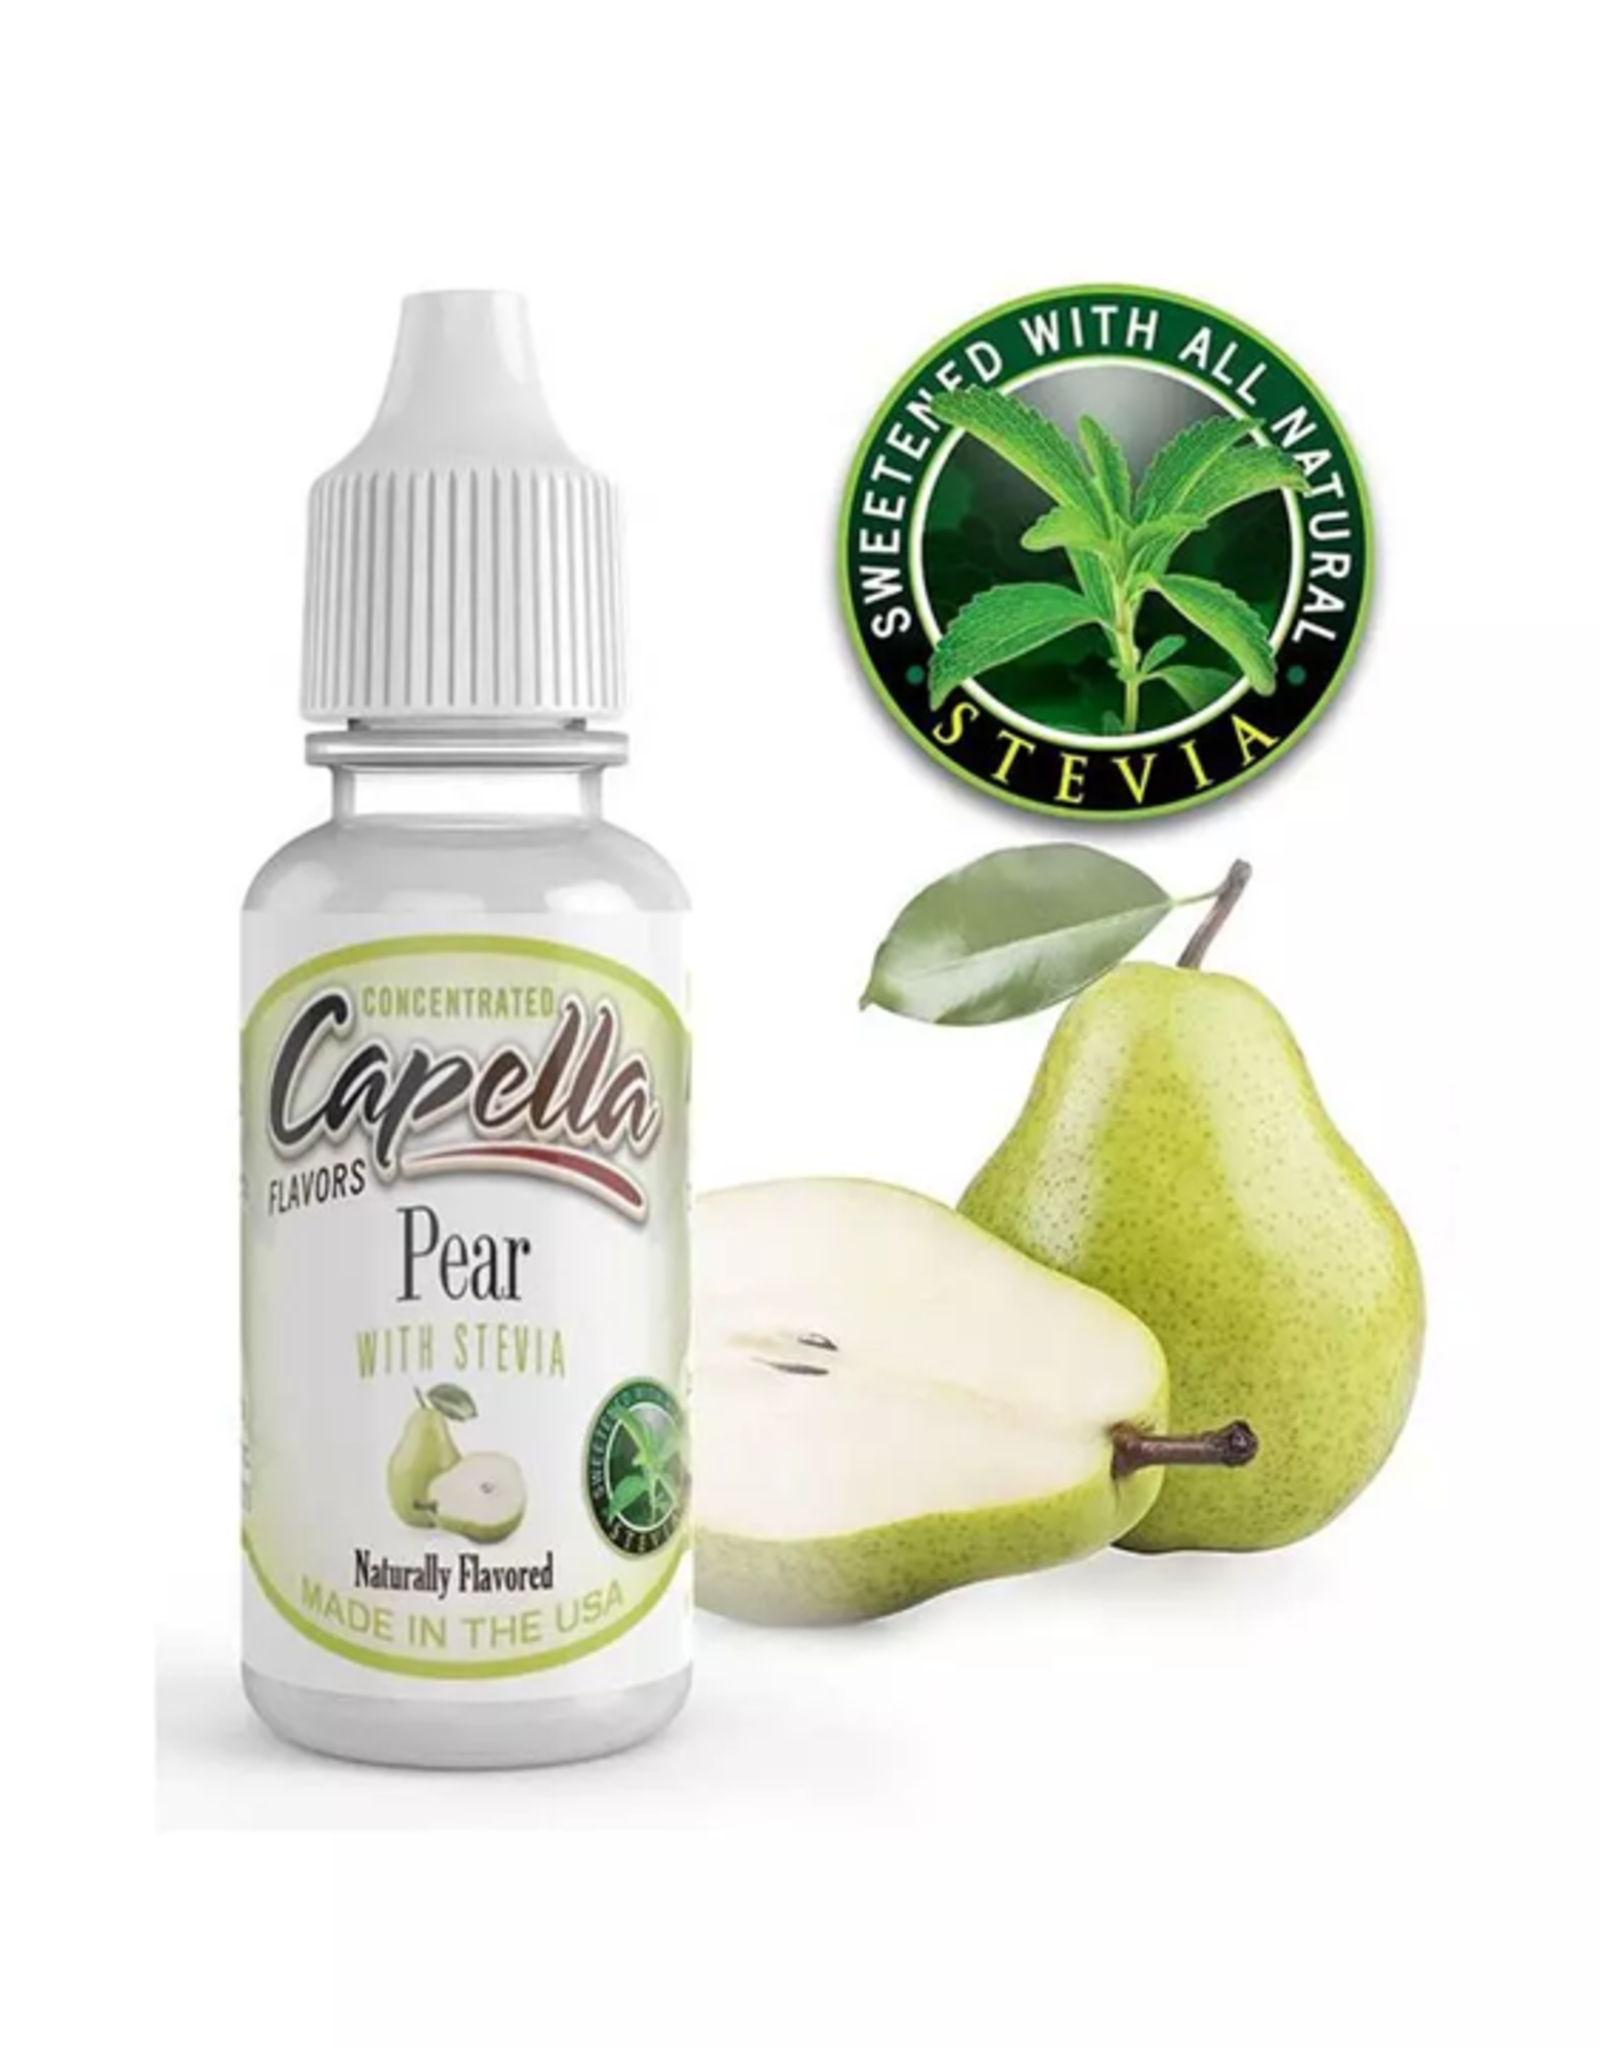 Capella Capella - Pear with Stevia Aroma 13ml